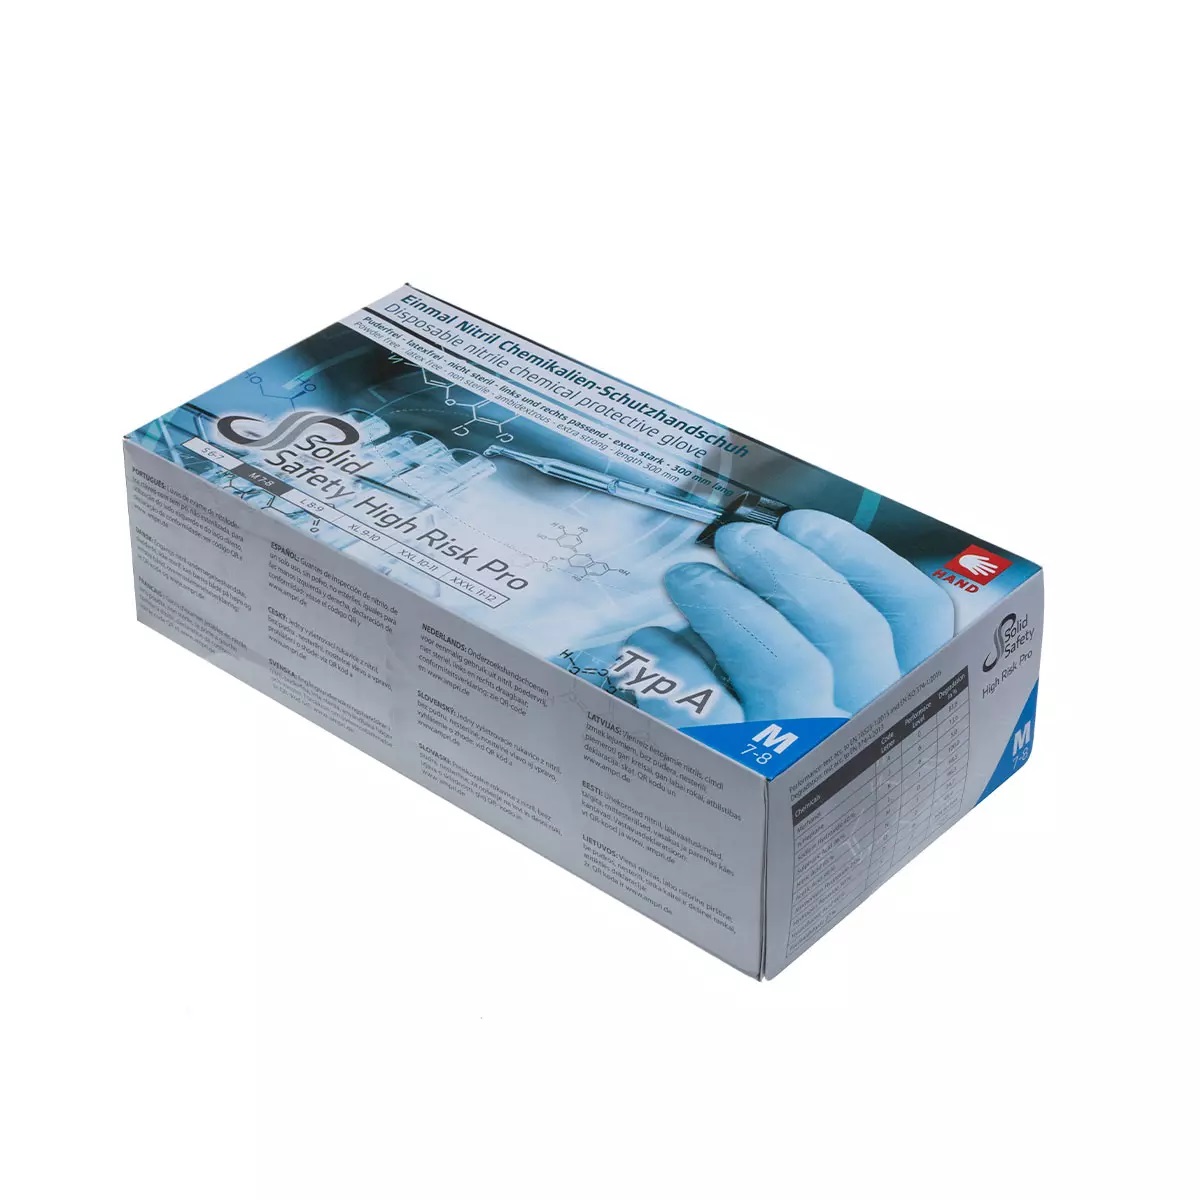 AMPRI SolidSafety HighRisk Pro Nitril-Einweg-Chemikalien-Schutz-Handschuh, puderfrei blau, Pkg. a 50, VE = 10